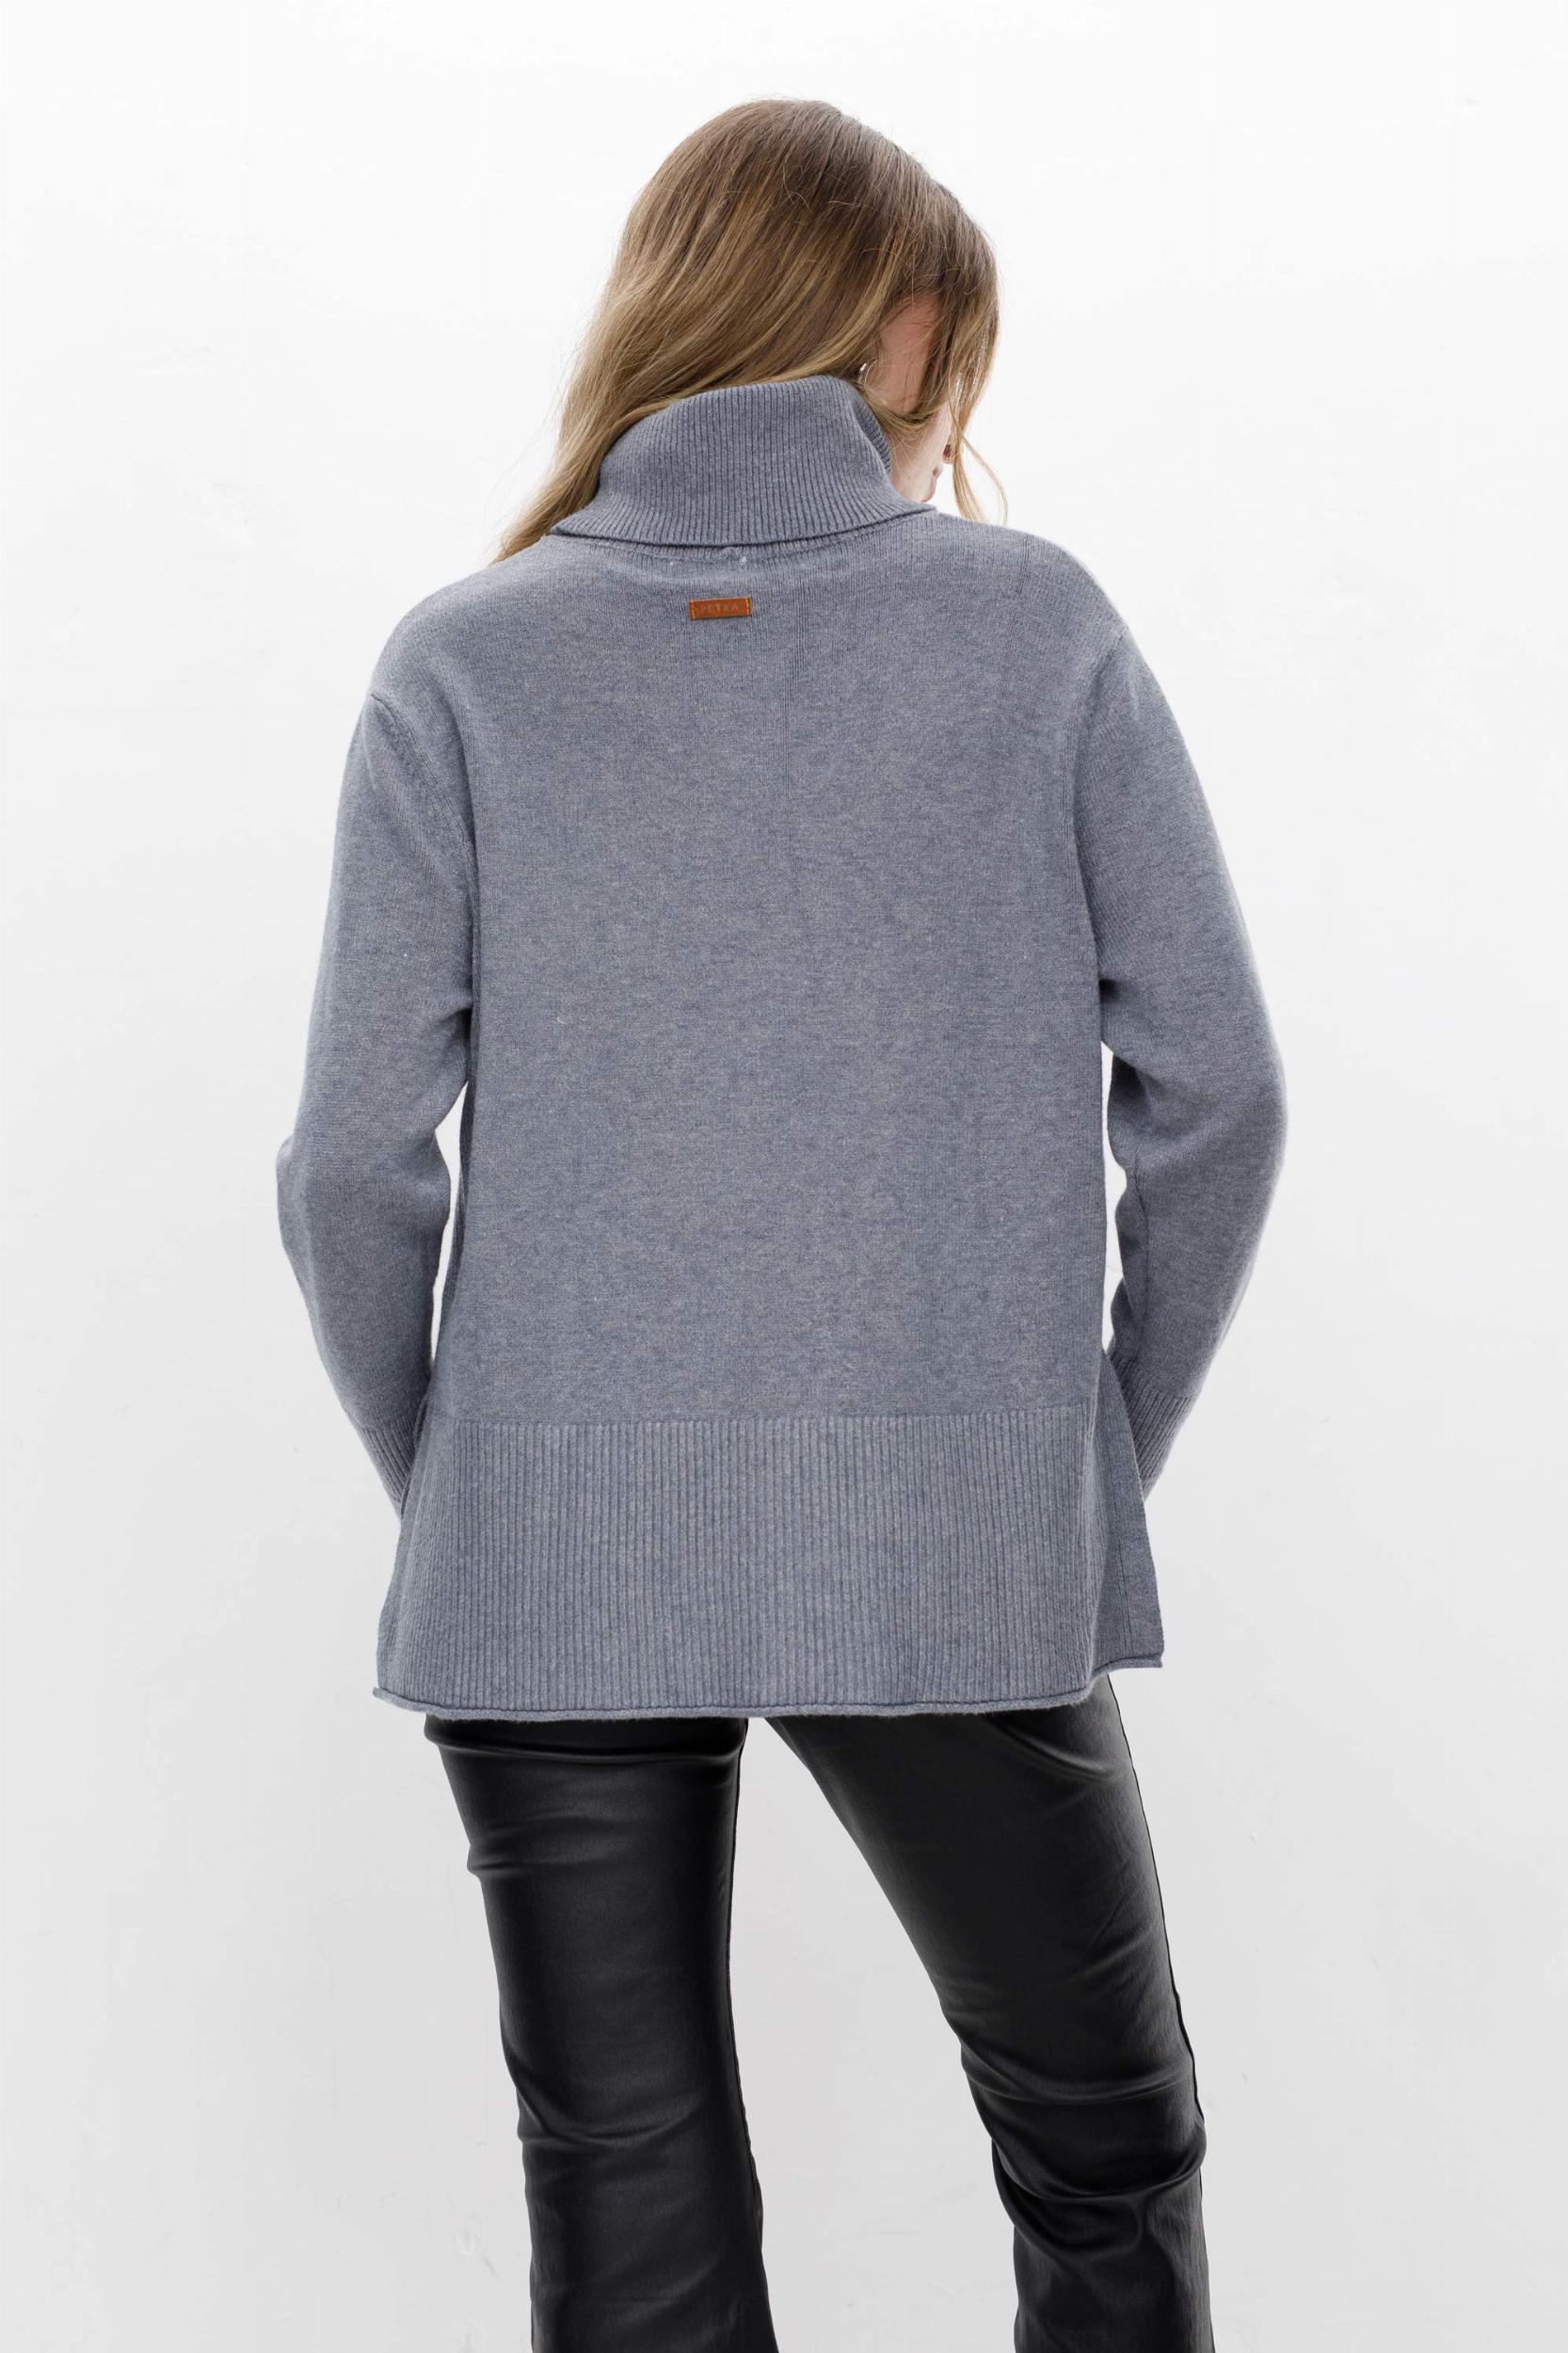 Sweater Polera Serrana gris talle unico